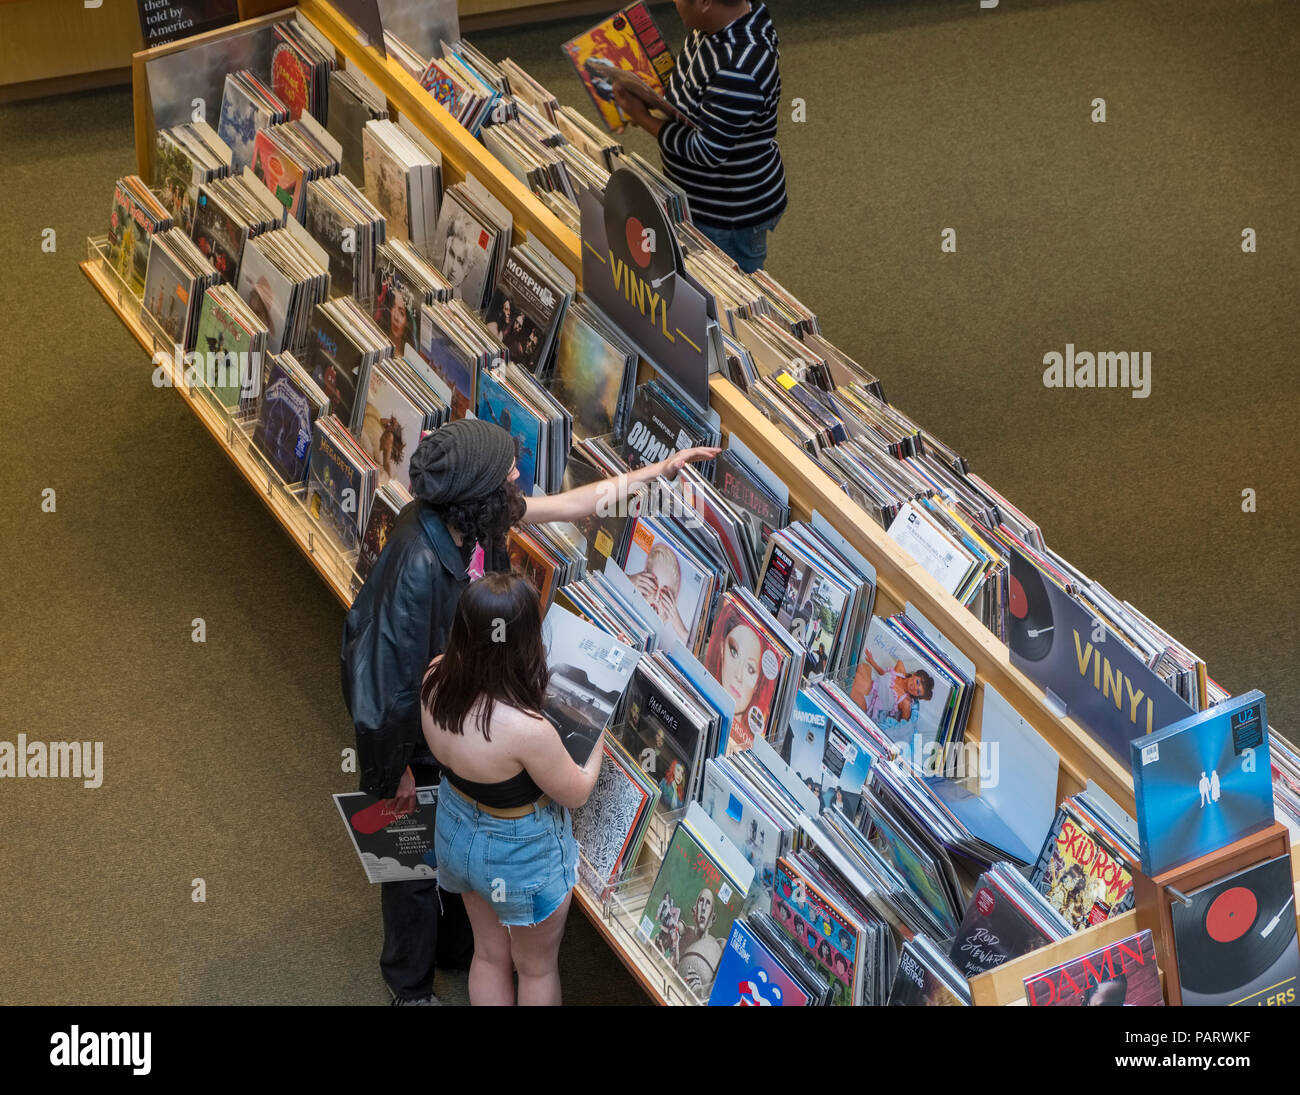 Les gens parcourant les disques vinyles et les albums de racks dans un magasin de disques à l'intérieur du magasin à Los Angeles, LA, California, USA Banque D'Images